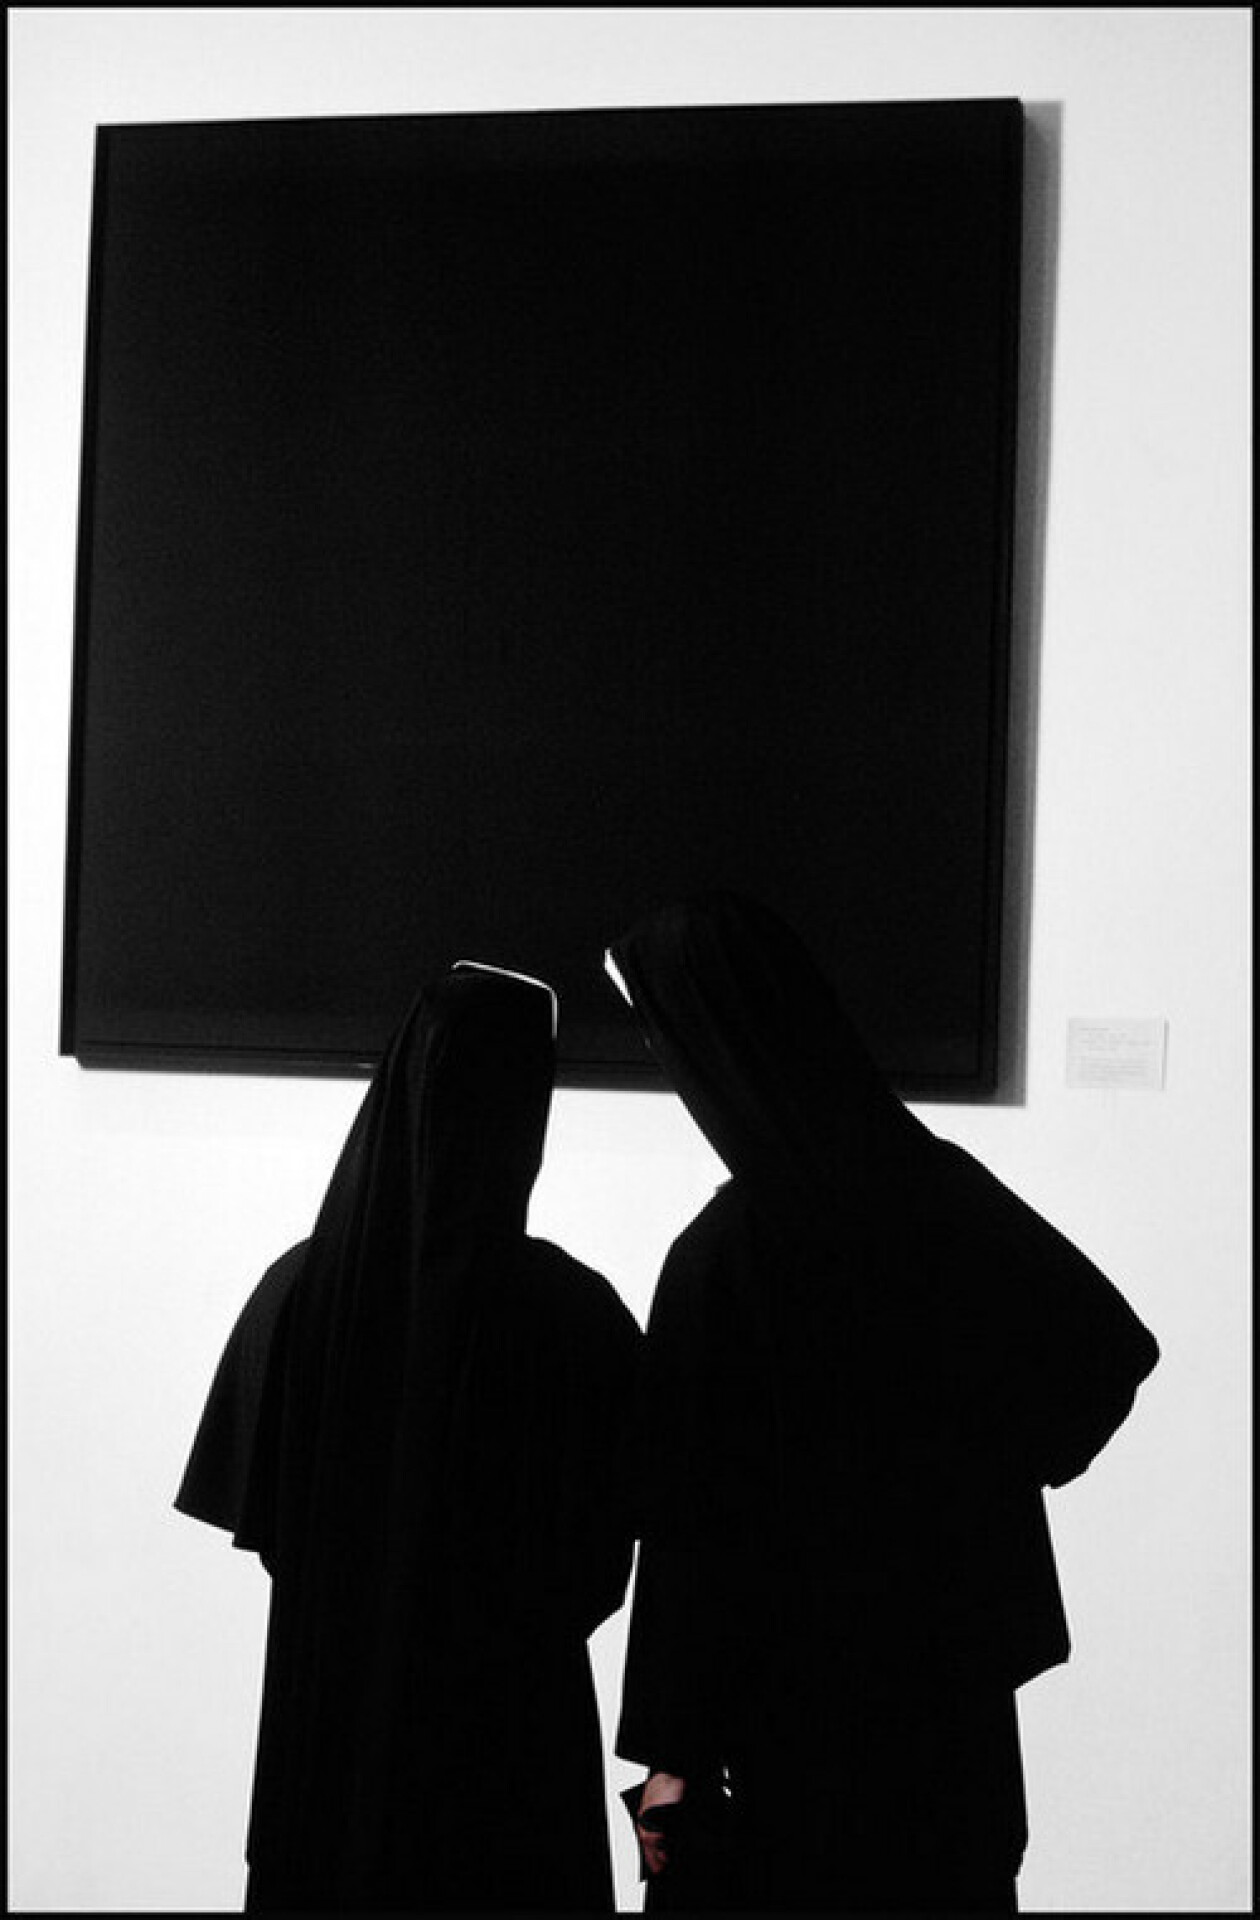 Монахини перед творением художника-авангардиста Эда Рейнхардта на выставке в Музее современного искусства на Манхеттене в Нью-Йорке, 1964. Фотограф Бёрт Глинн